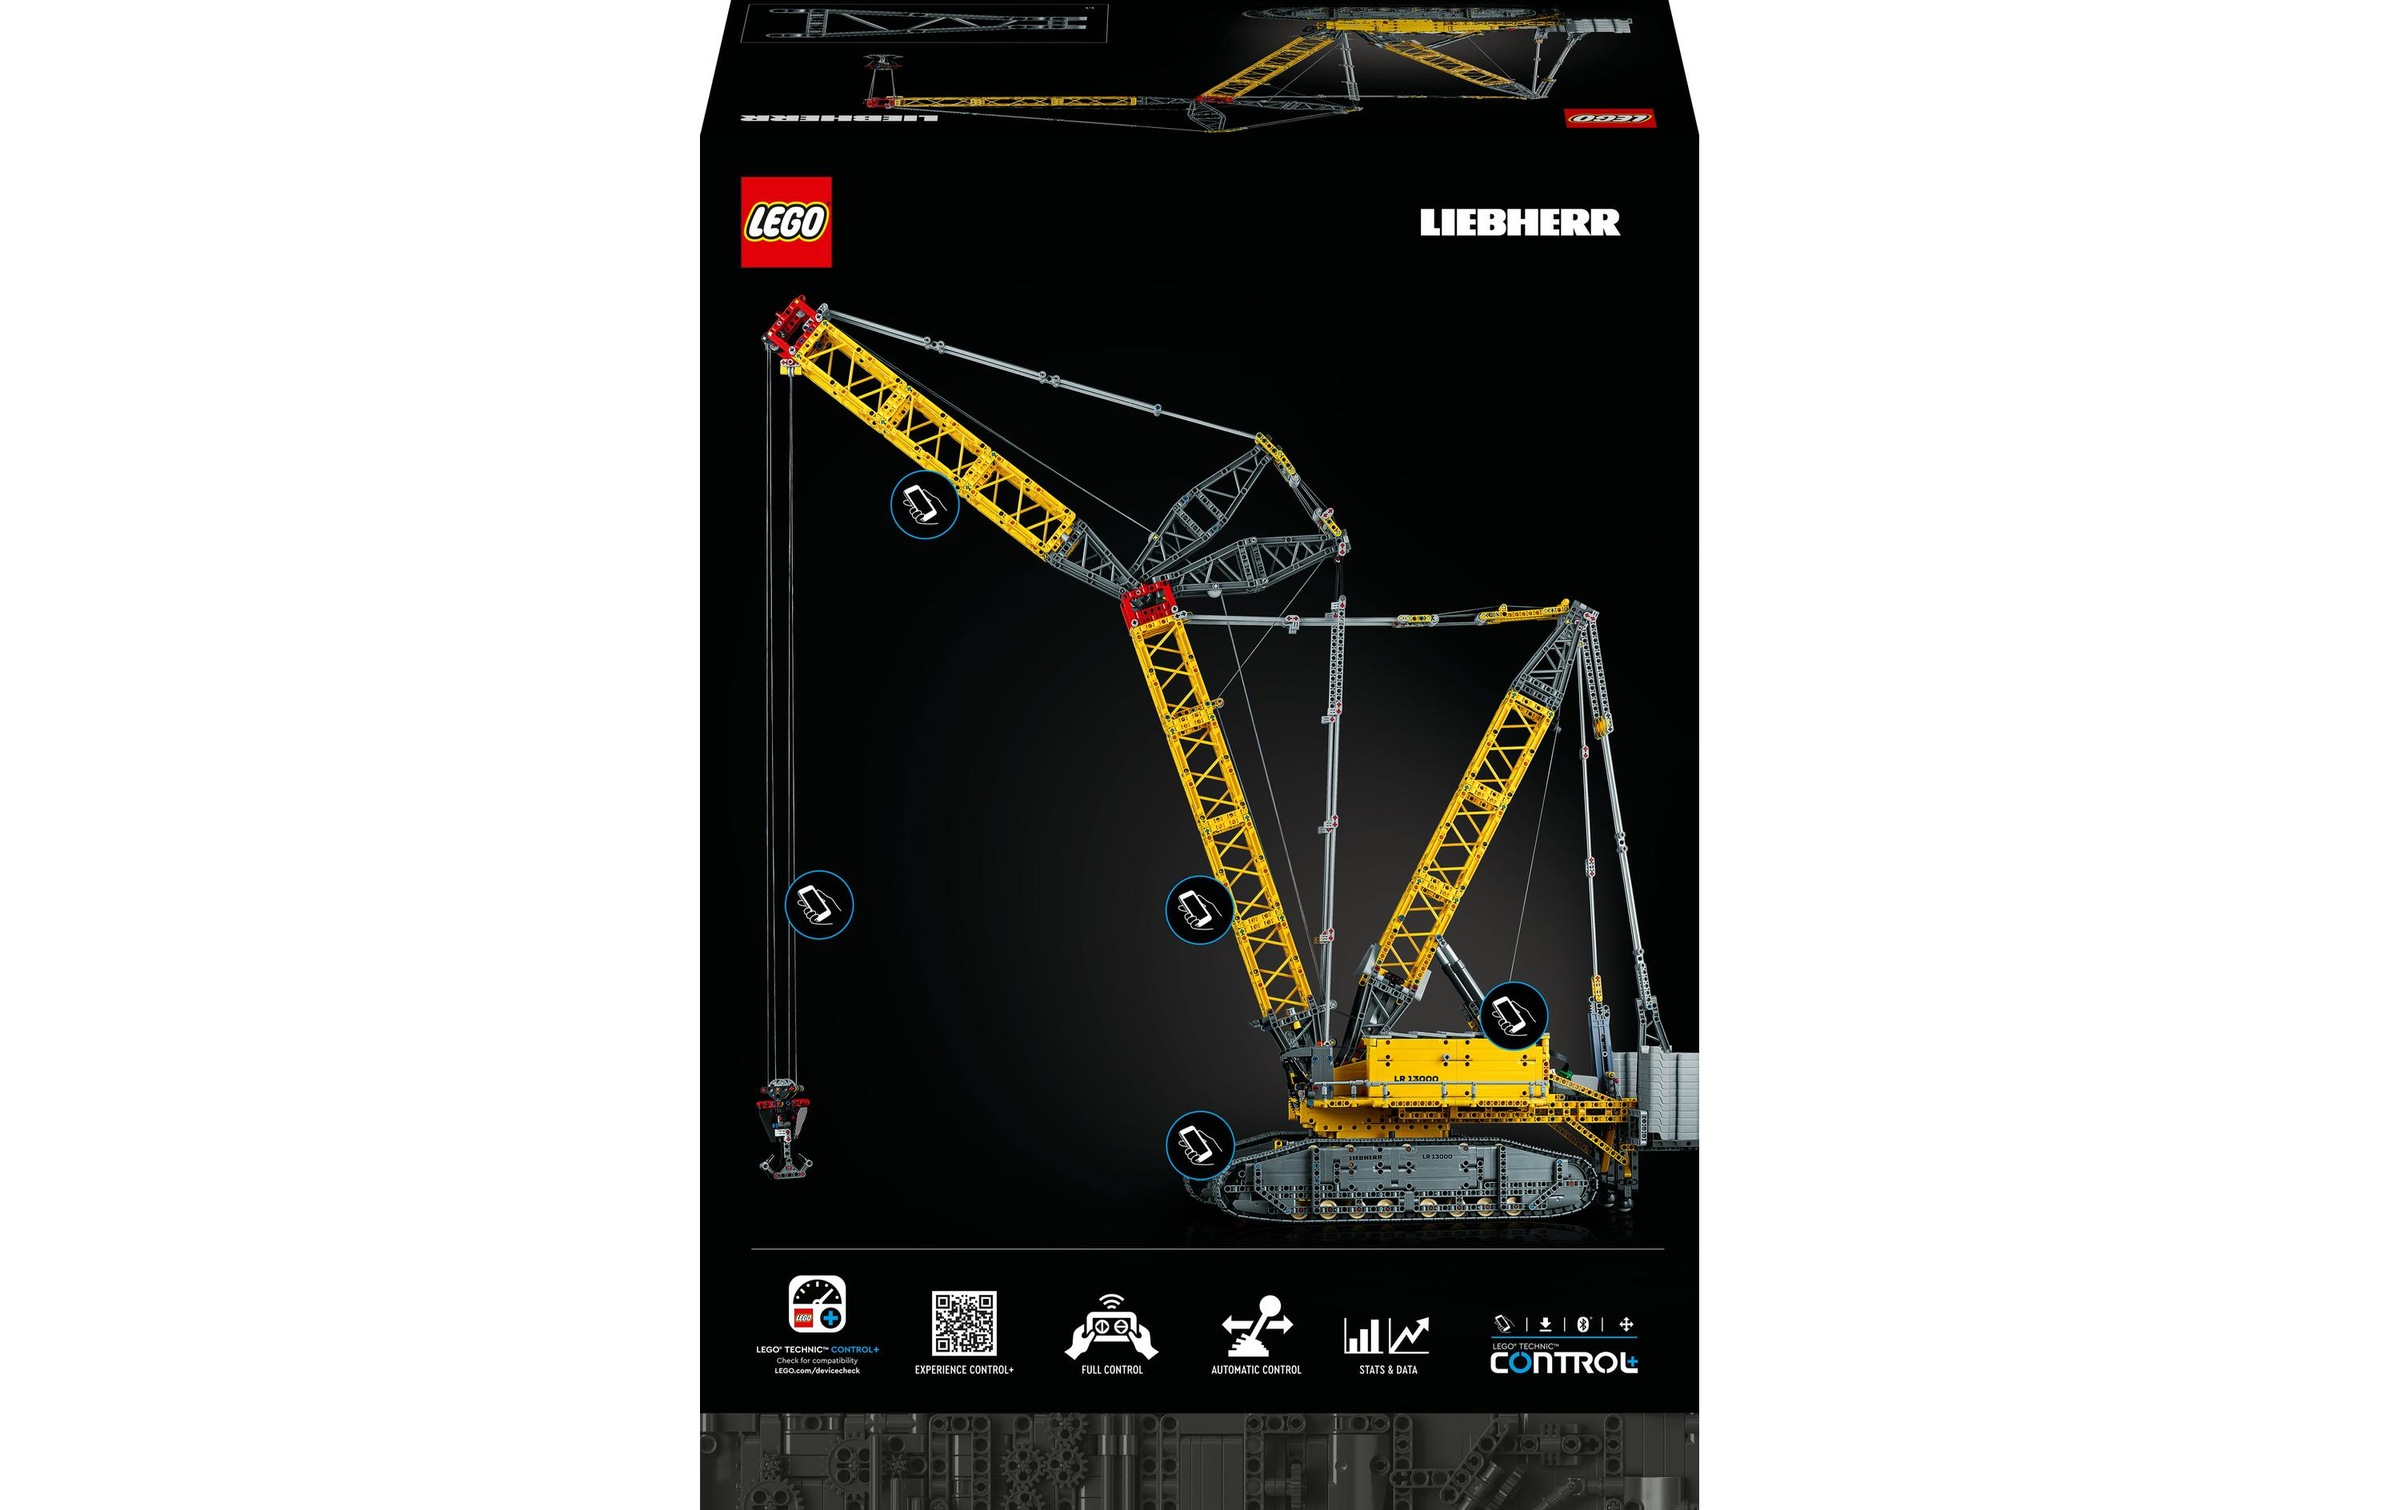 LEGO® Spielbausteine »Liebherr LR 13000«, (2883 St.)